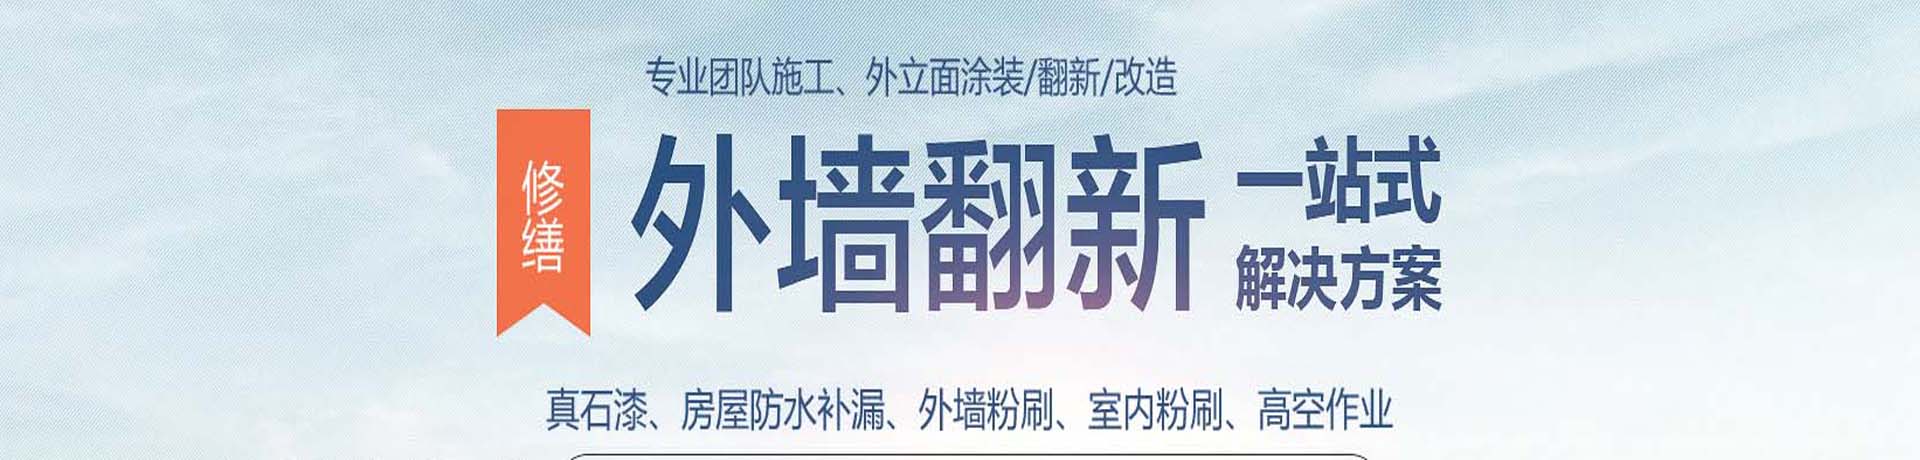 上海外墙高空涂料粉刷,外墙真石漆施工,上海外墙翻新公司,专业的墙面涂刷服务-上海物美环境工程有限公司 - 【推荐】 - 新闻资讯